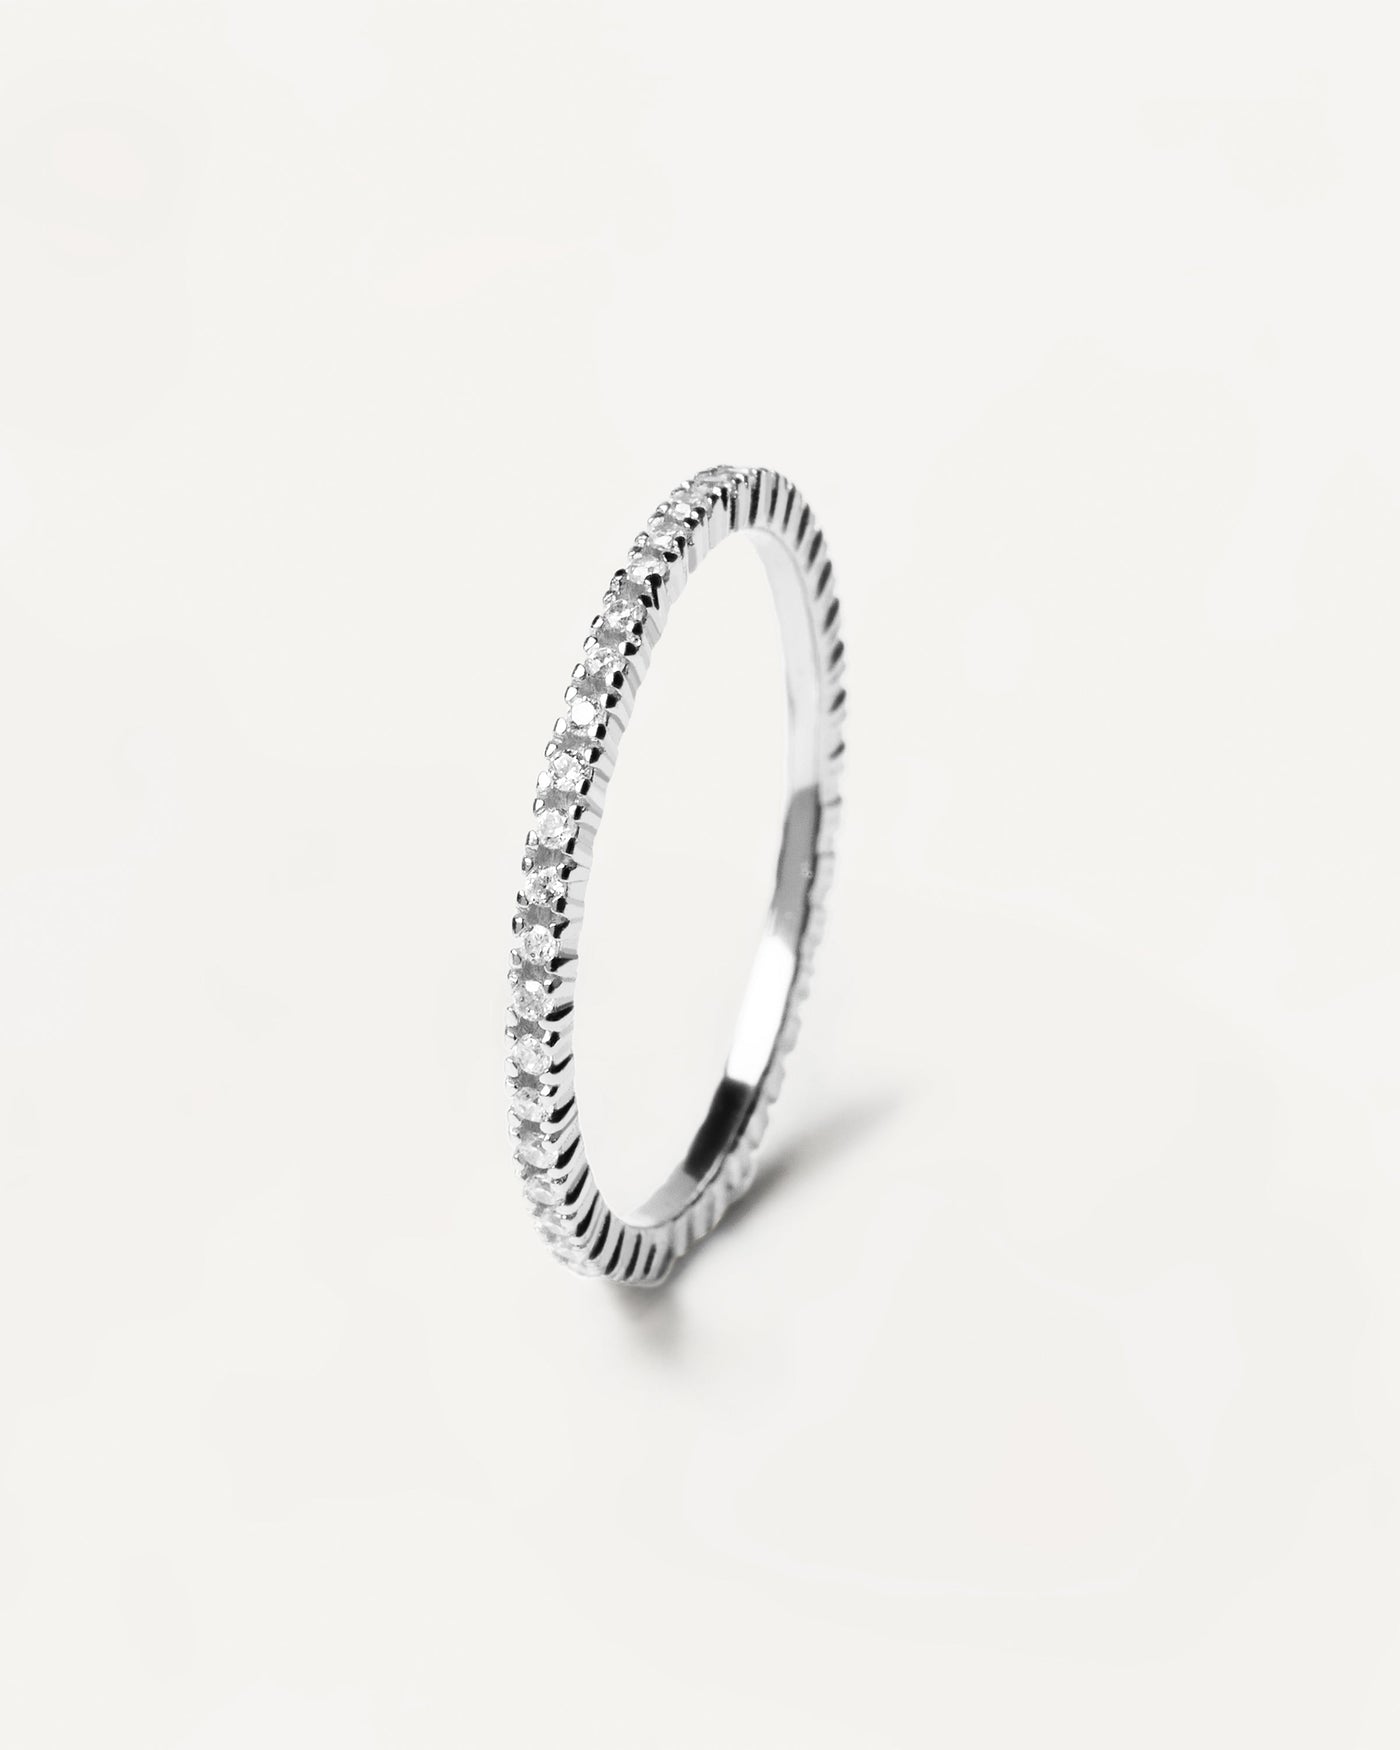 Anello in argento White Essential. anello in argento 925 con zirconi bianchi incastonati. Acquista le ultime novità di PDPAOLA. Effettua il tuo ordine in tutta sicurezza e non lasciarti sfuggire questo best seller.